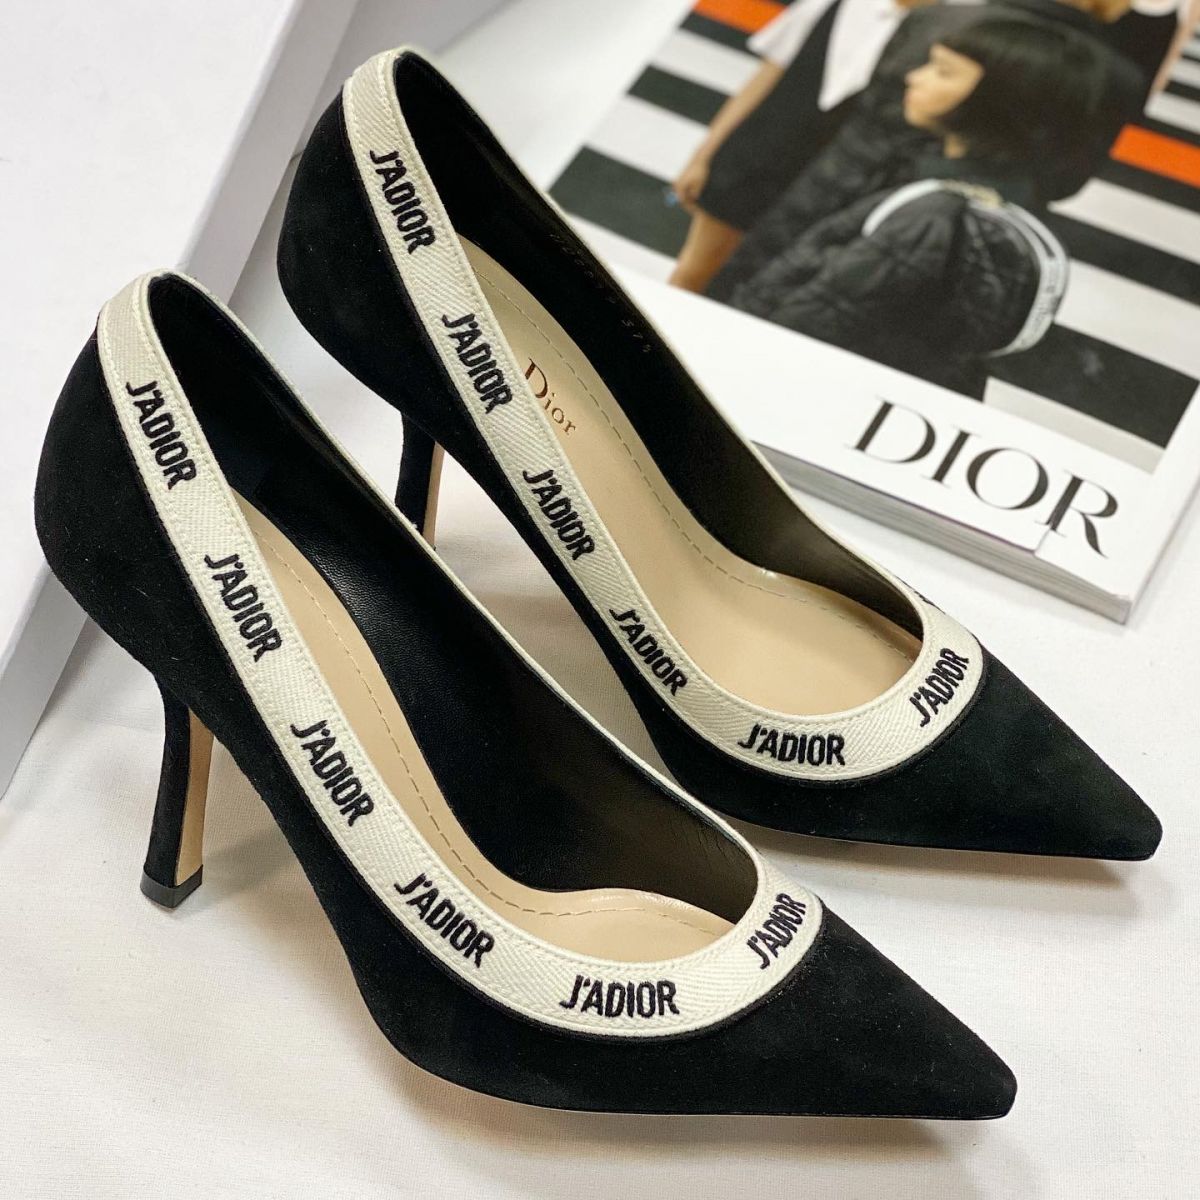 Туфли Christian Dior размер 37.5 цена 46 155 руб / новые / 